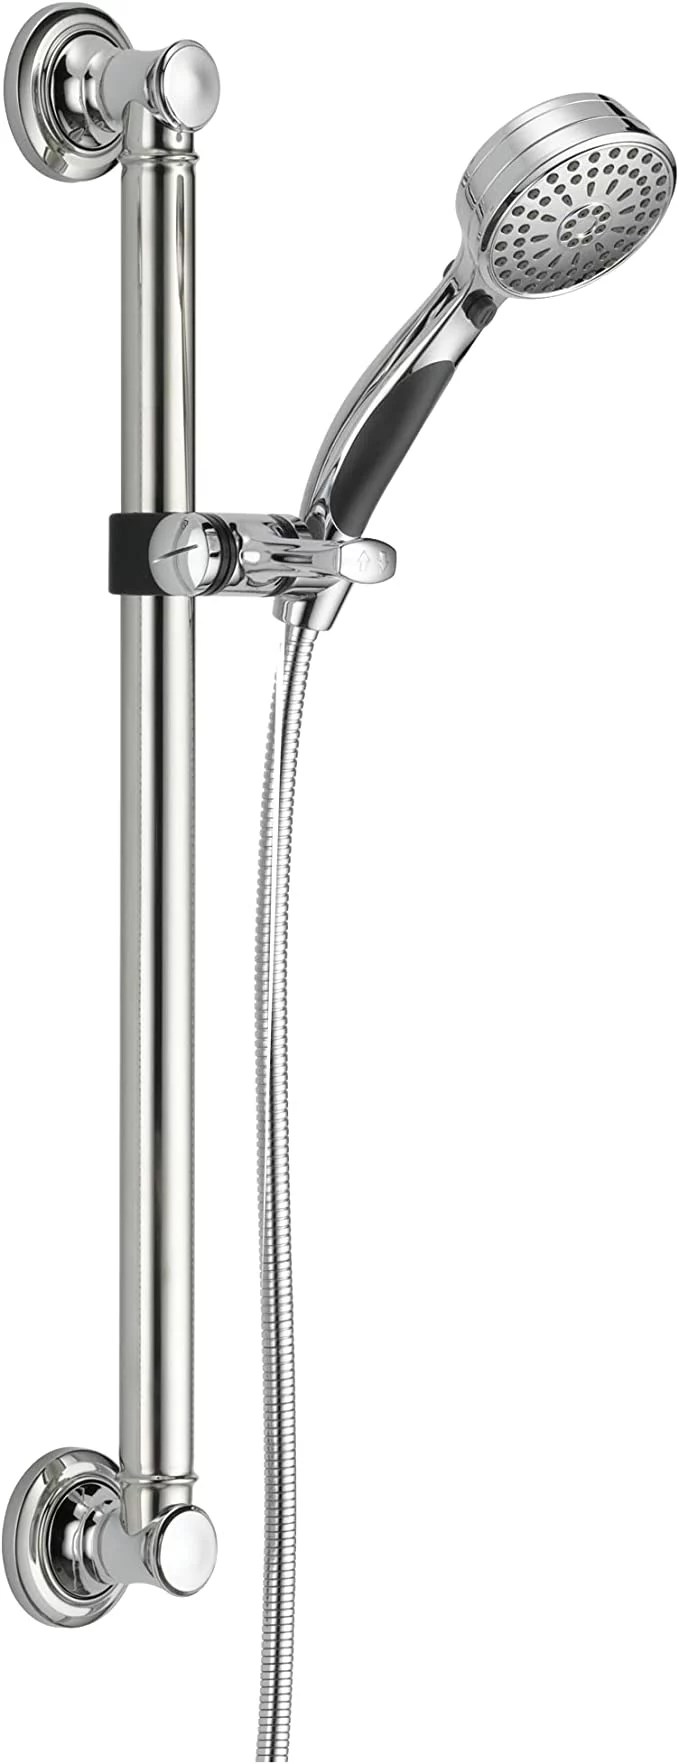 Delta Faucet 9-Spray shower head